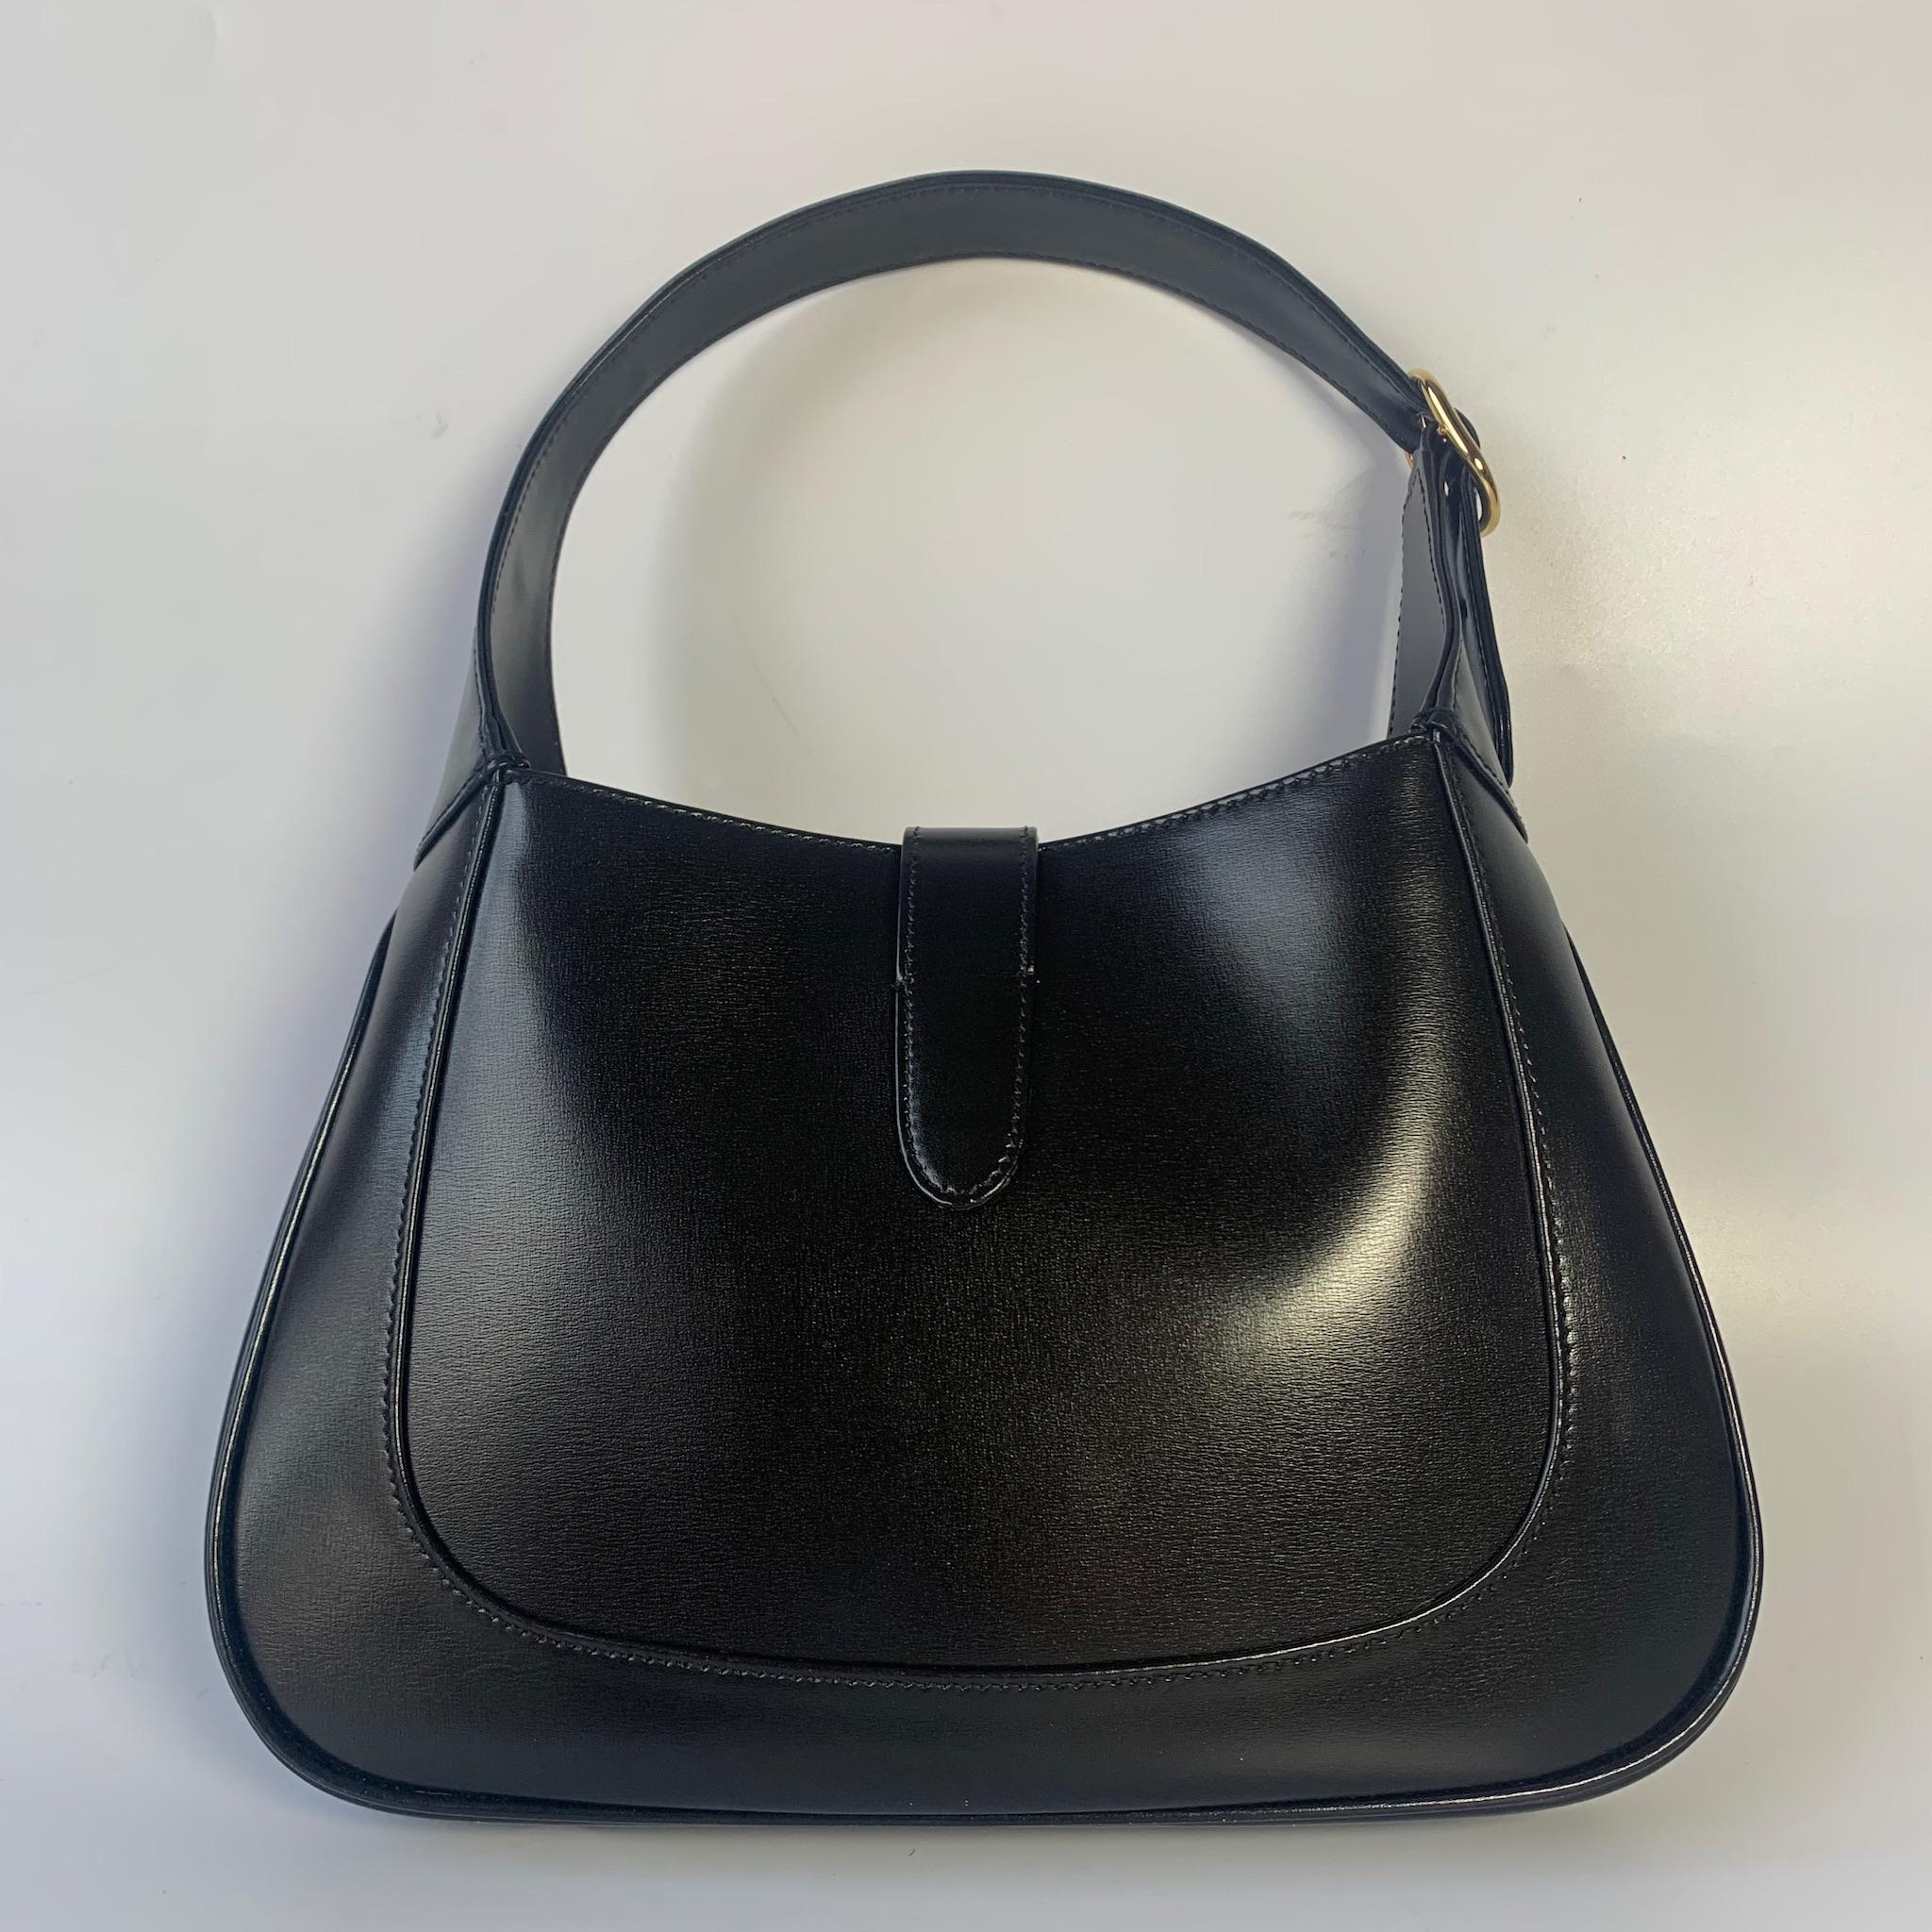 Die Gucci Jackie 1961 Black Small Tasche ist eine moderne Interpretation eines kultigen Designs. Sie ist aus Leder gefertigt, hat eine strukturierte Silhouette und verfügt über einen Crossbody-Riemen, damit Sie Ihre Essentials überallhin mitnehmen